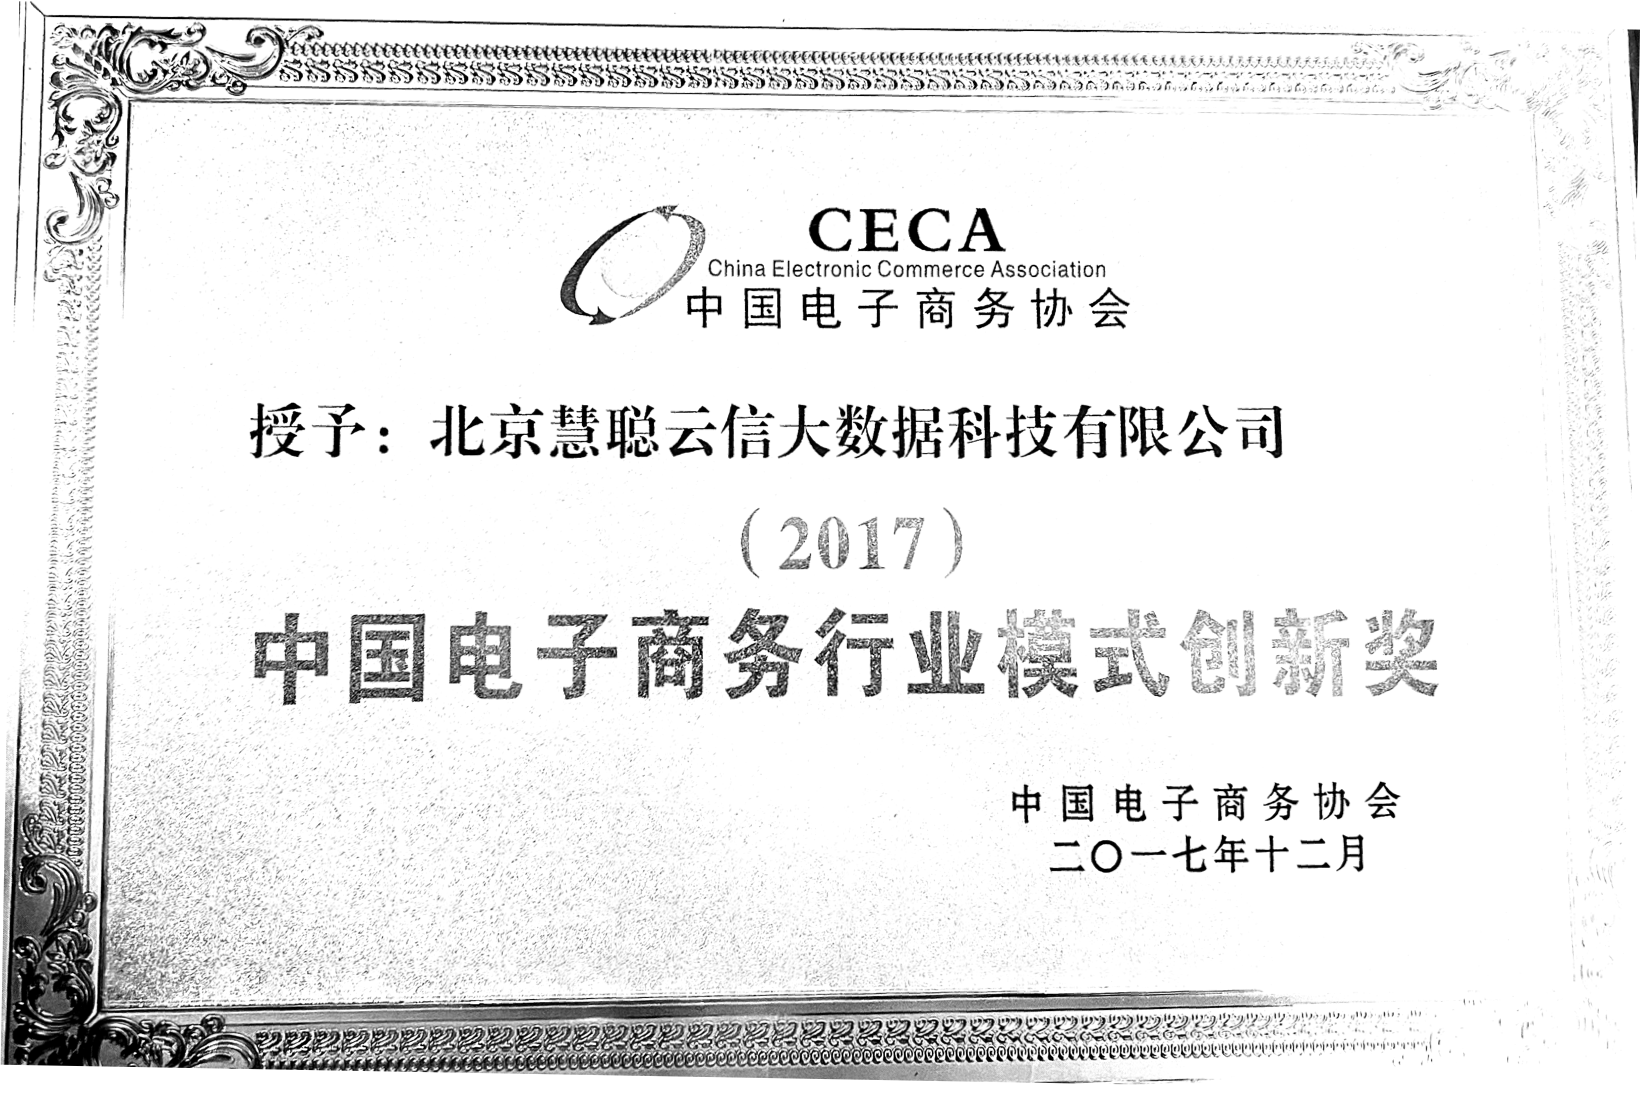 中国电子商务行业模式创新奖